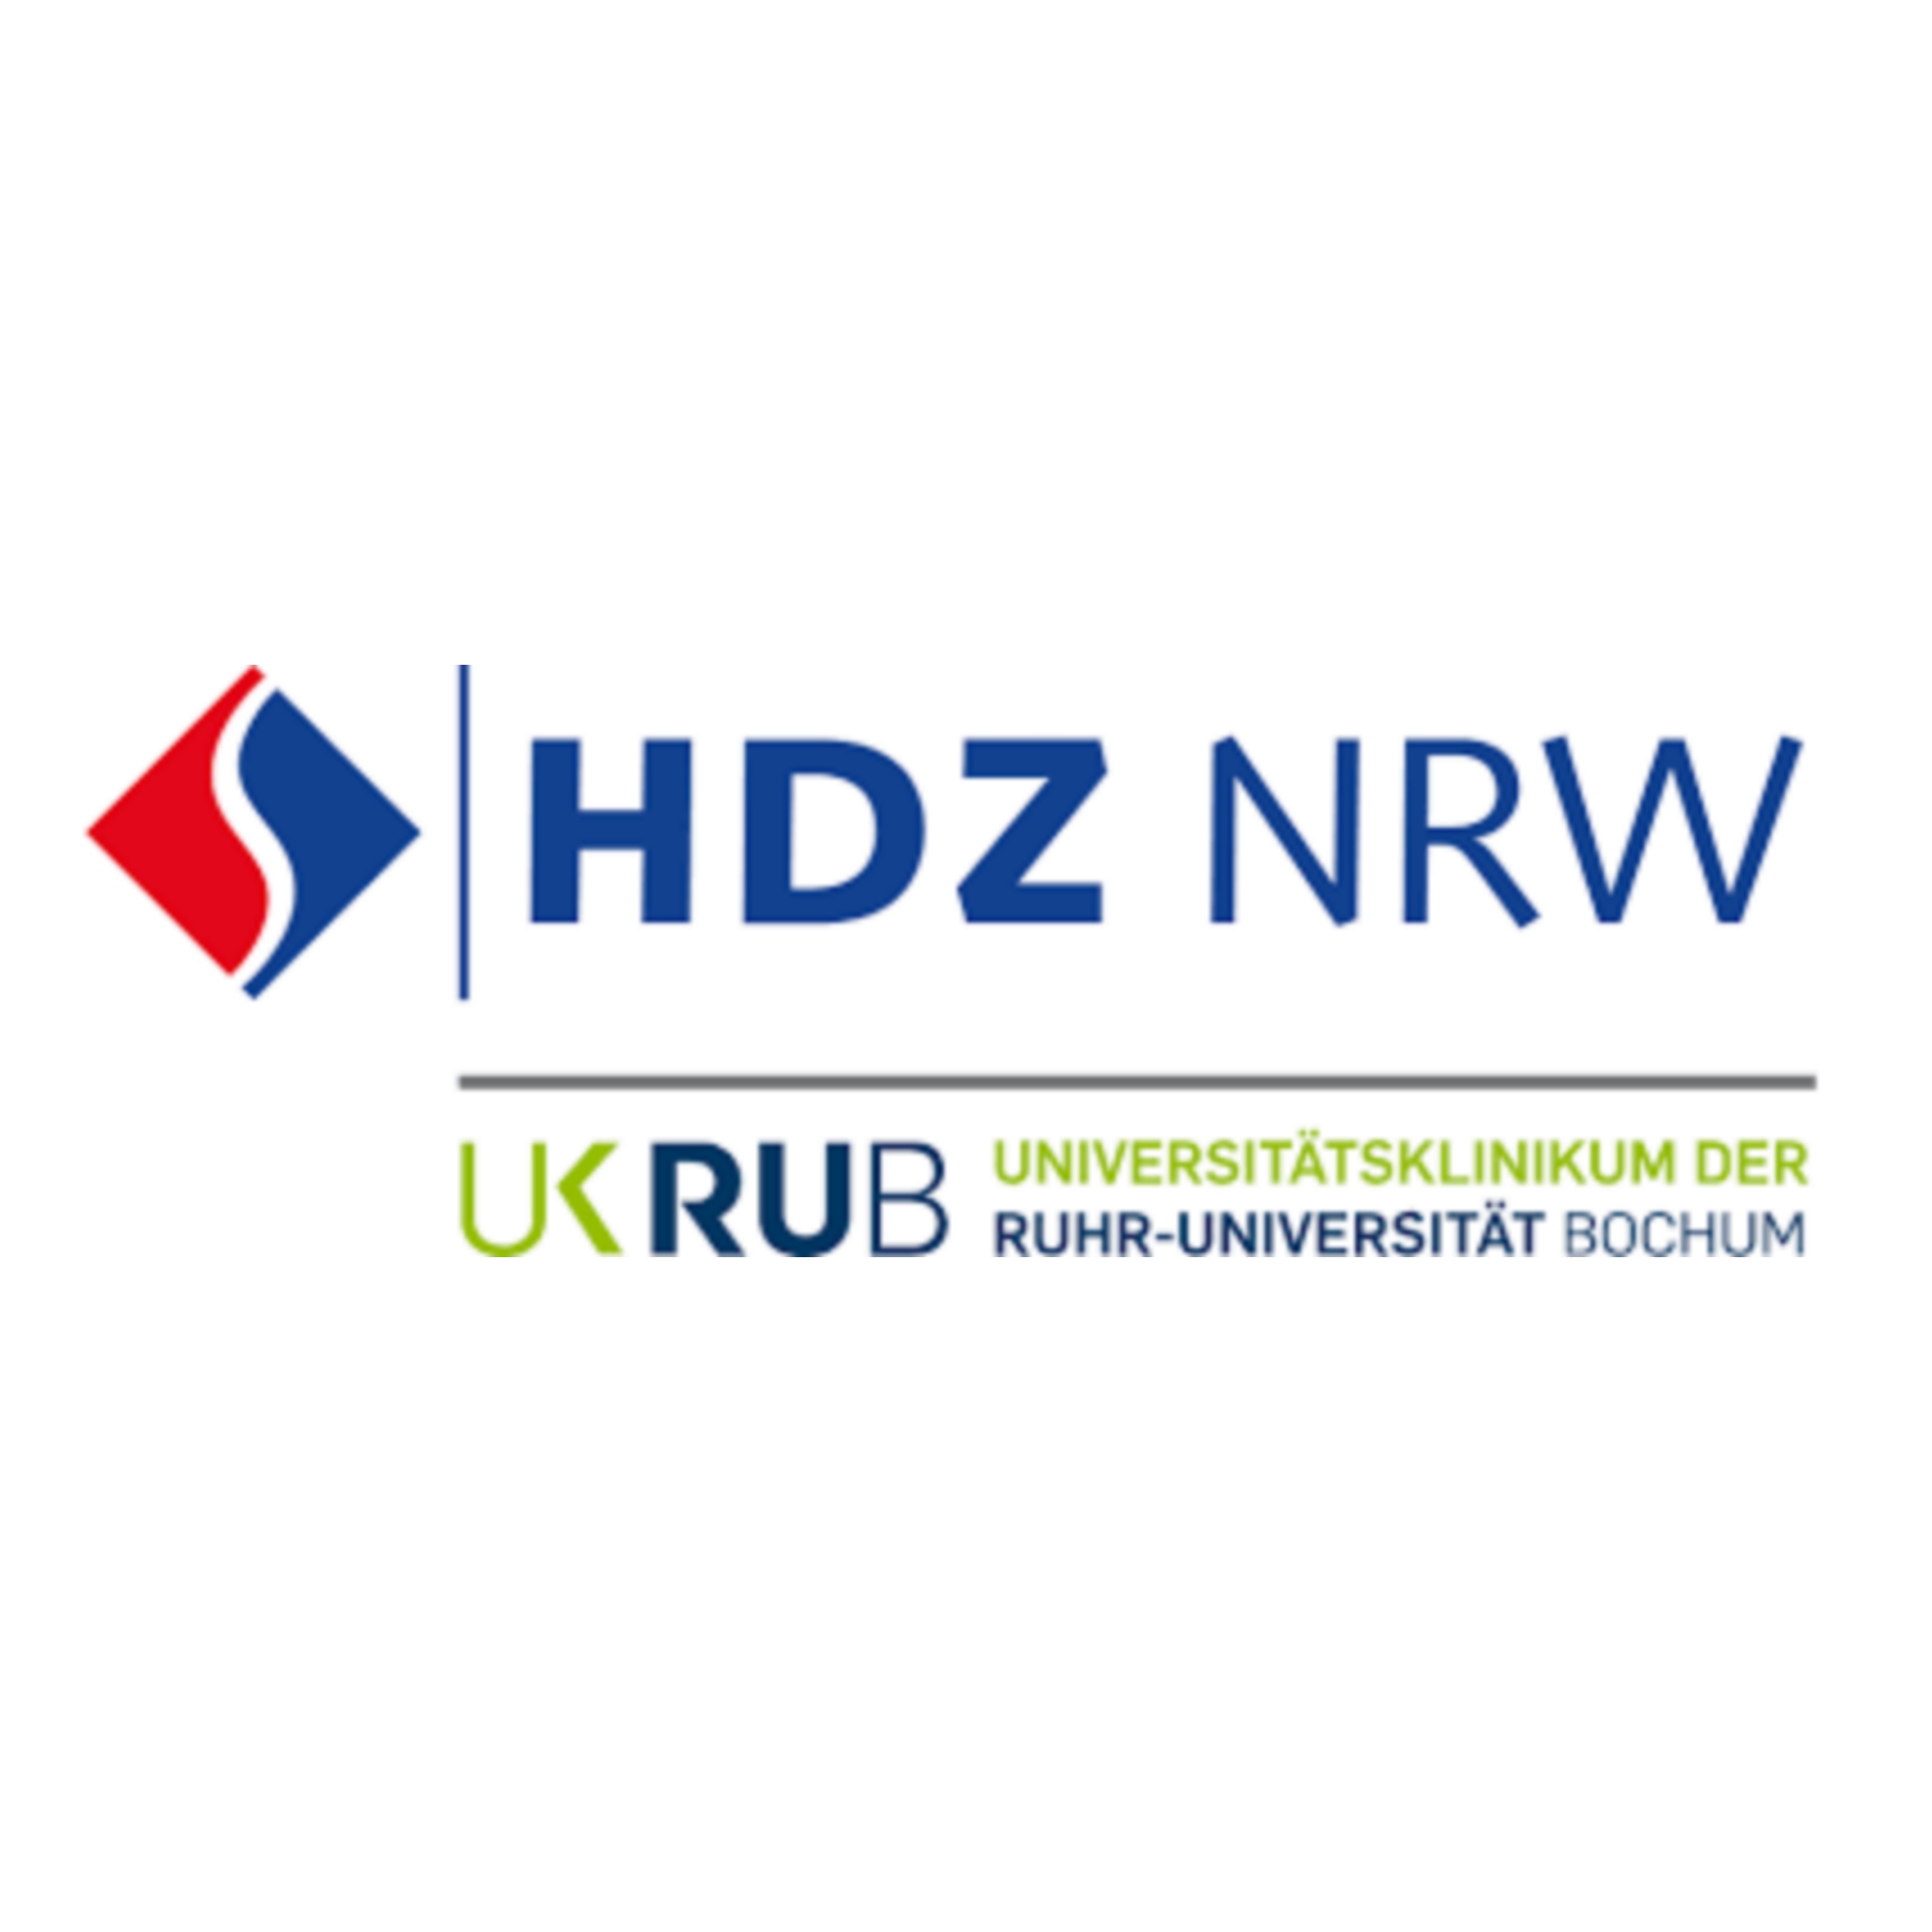 Zu sehen ins das Logo des Herz- und Diabeteszentrums NRW. Es handelt sich um eine Wort-Bildmarke in den Farben rot und blau.